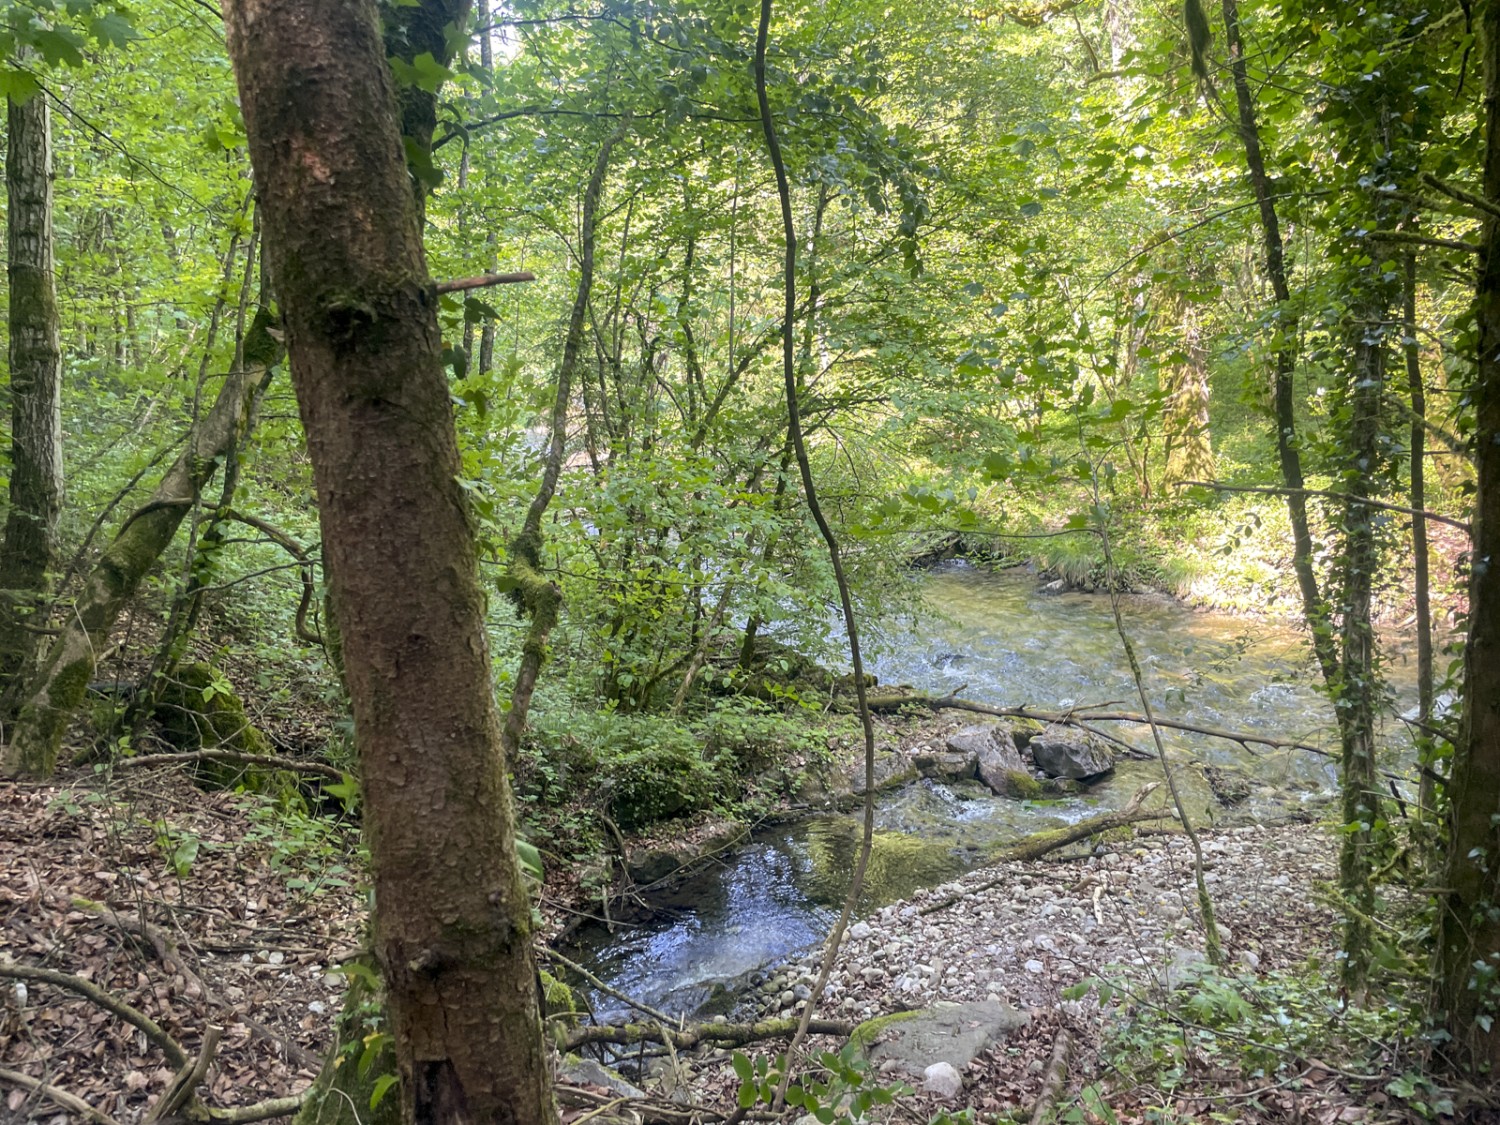 Le chemin serpente dans la forêt au bord de l’eau. Photo: Vera In-Albon